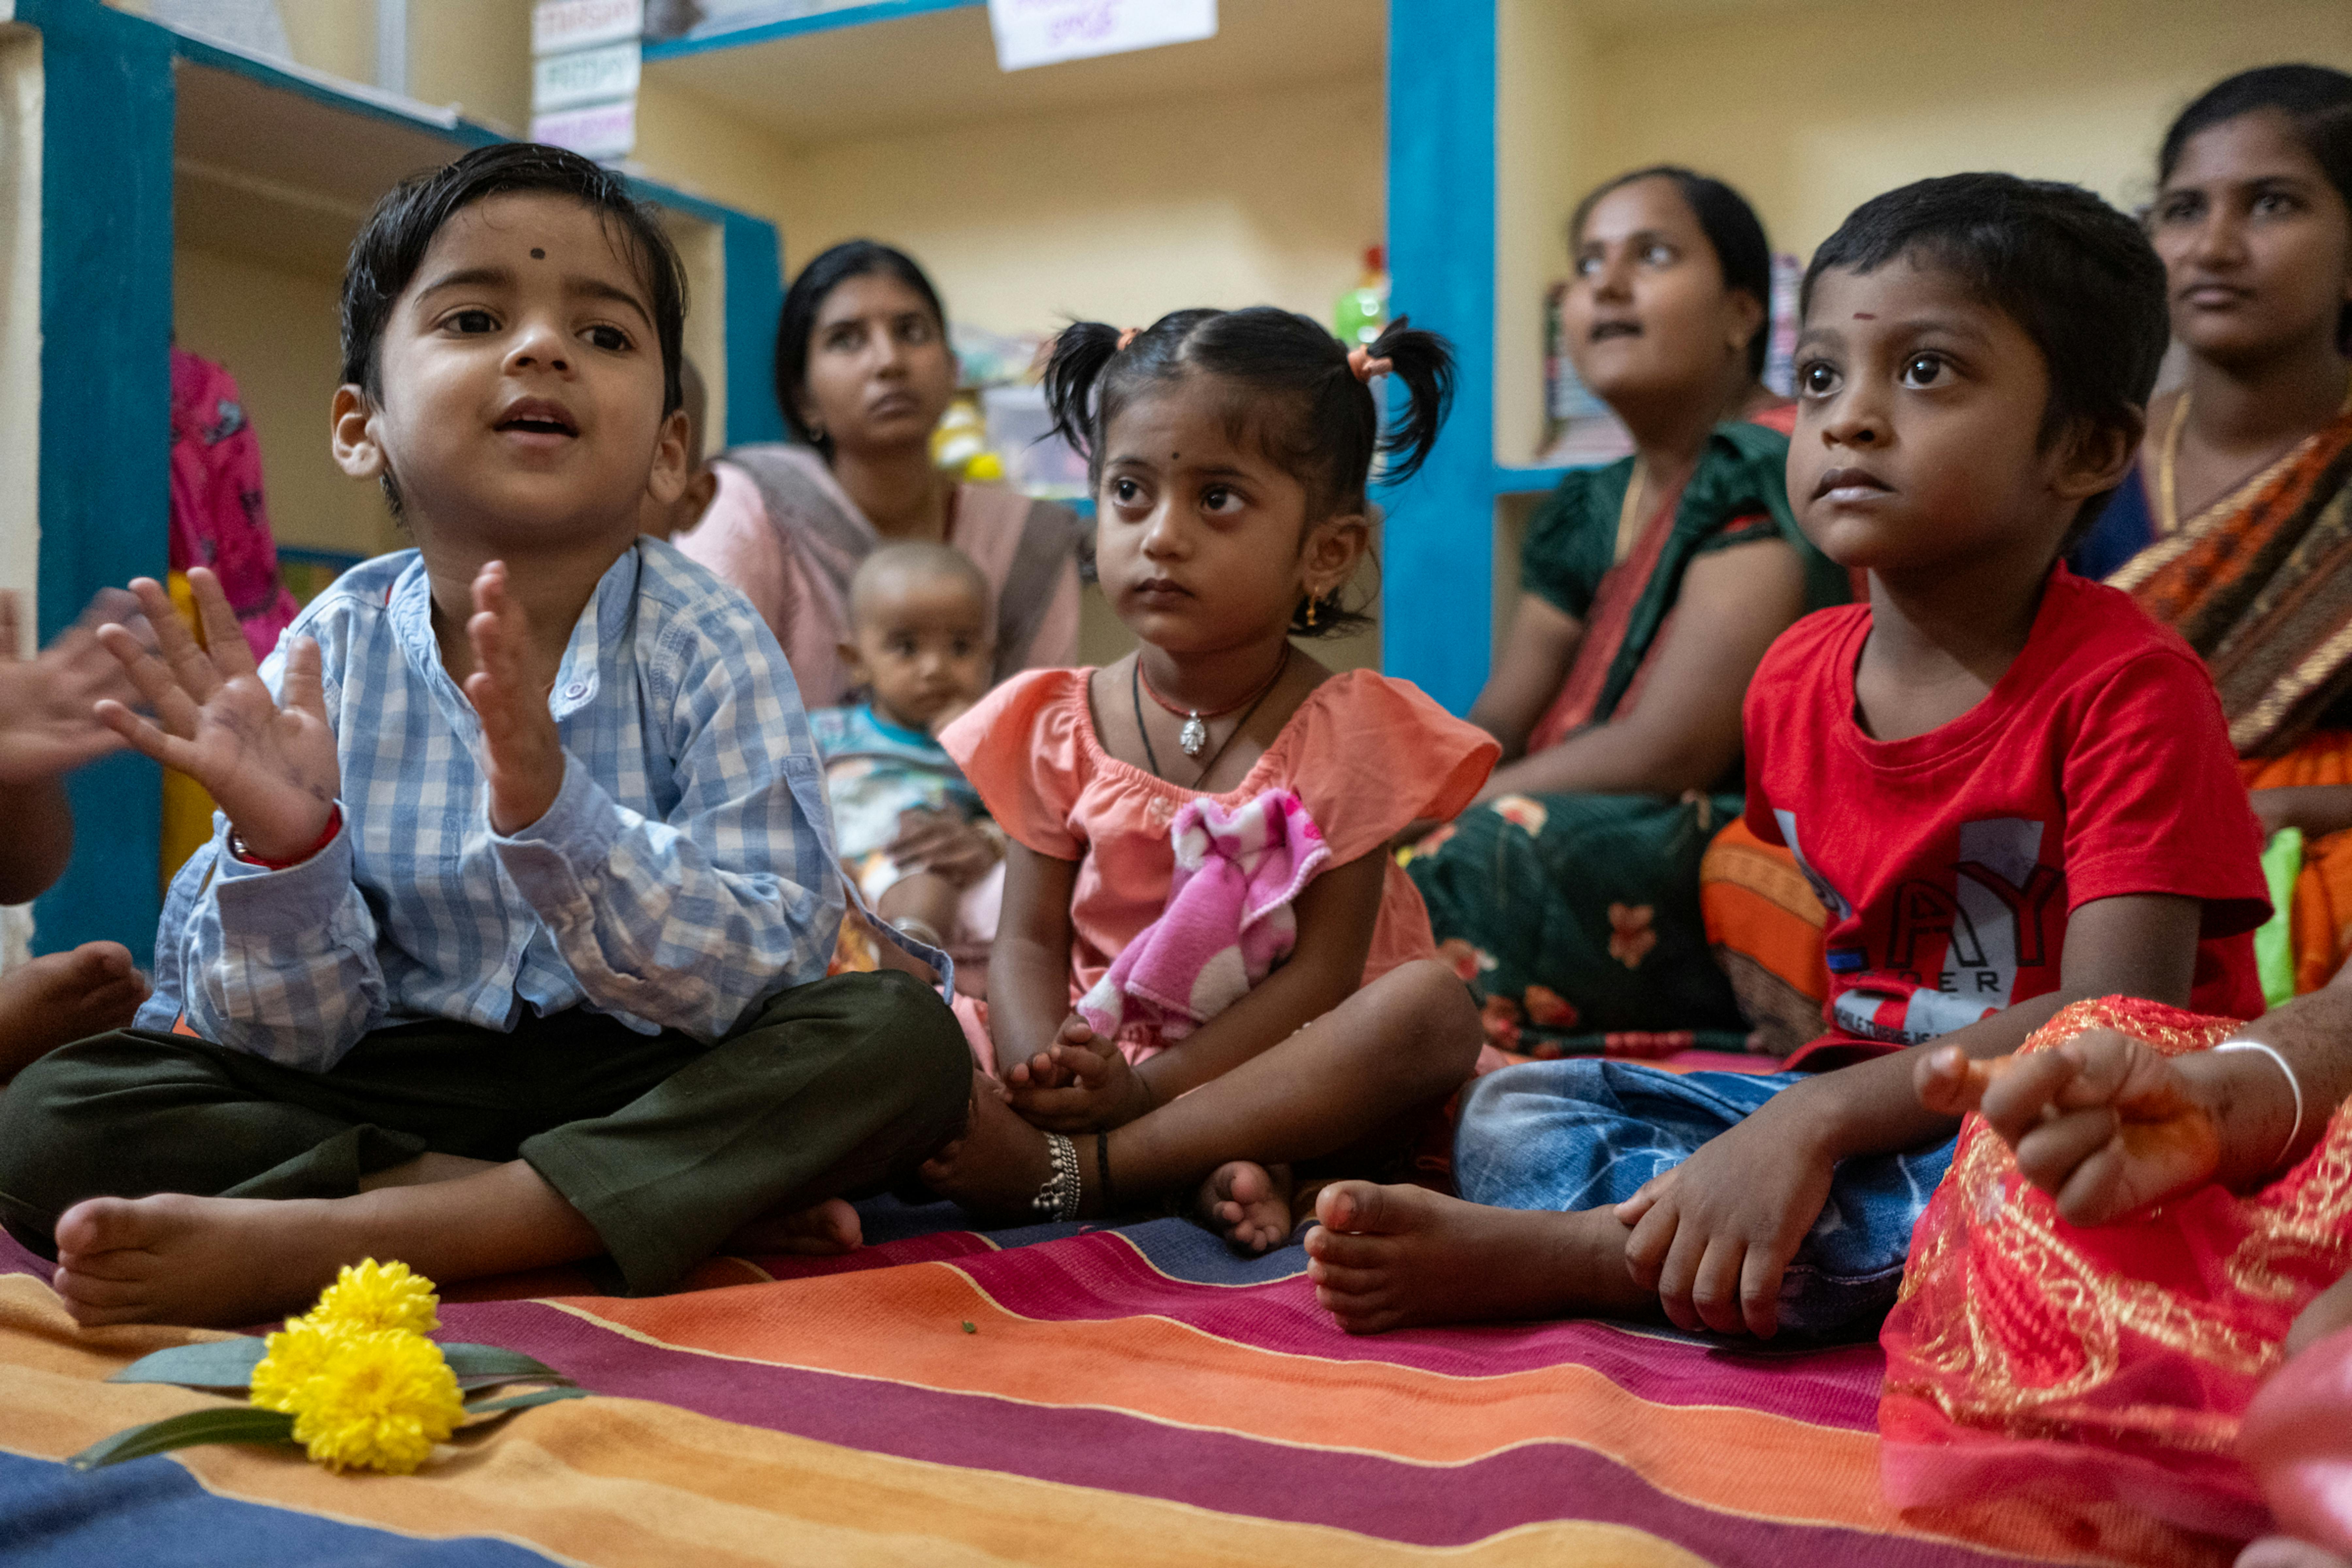 In India, grazie ai programmi nutrizionali e sanitari, solo negli ultimi 5 anni la mortalità dei bambini sotto i 5 anni è scesa di oltre il 25%.